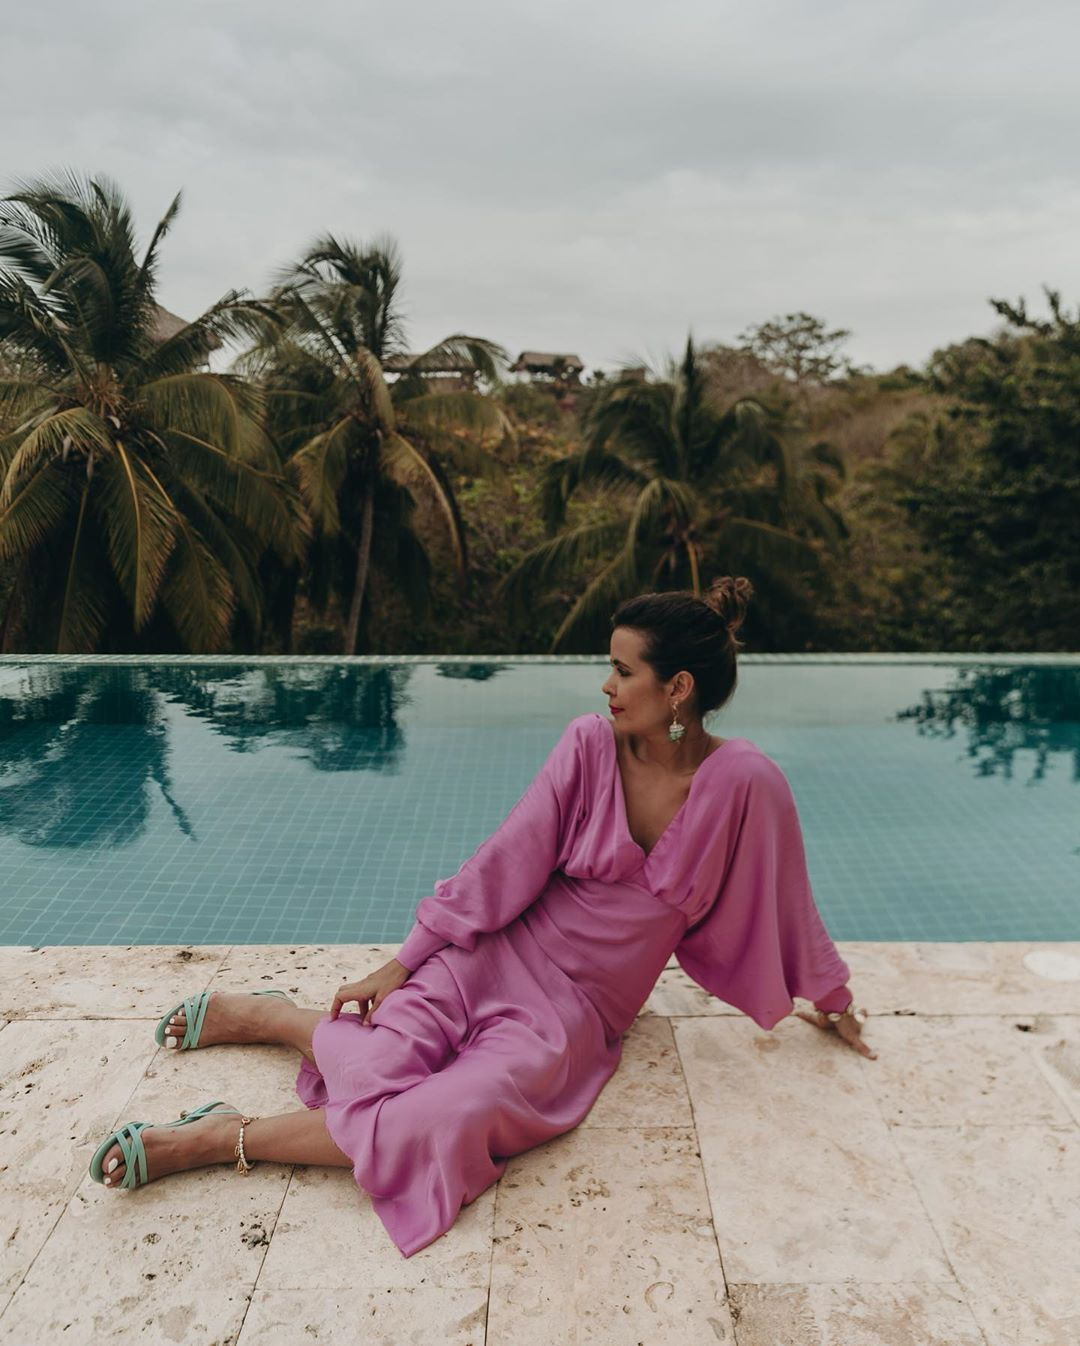 La influencer Sara Escudero posa sentada al borde de una piscina con un vestido rosa y sandalias azules, uno de los mejores look de las influencers para copiar esta temporada